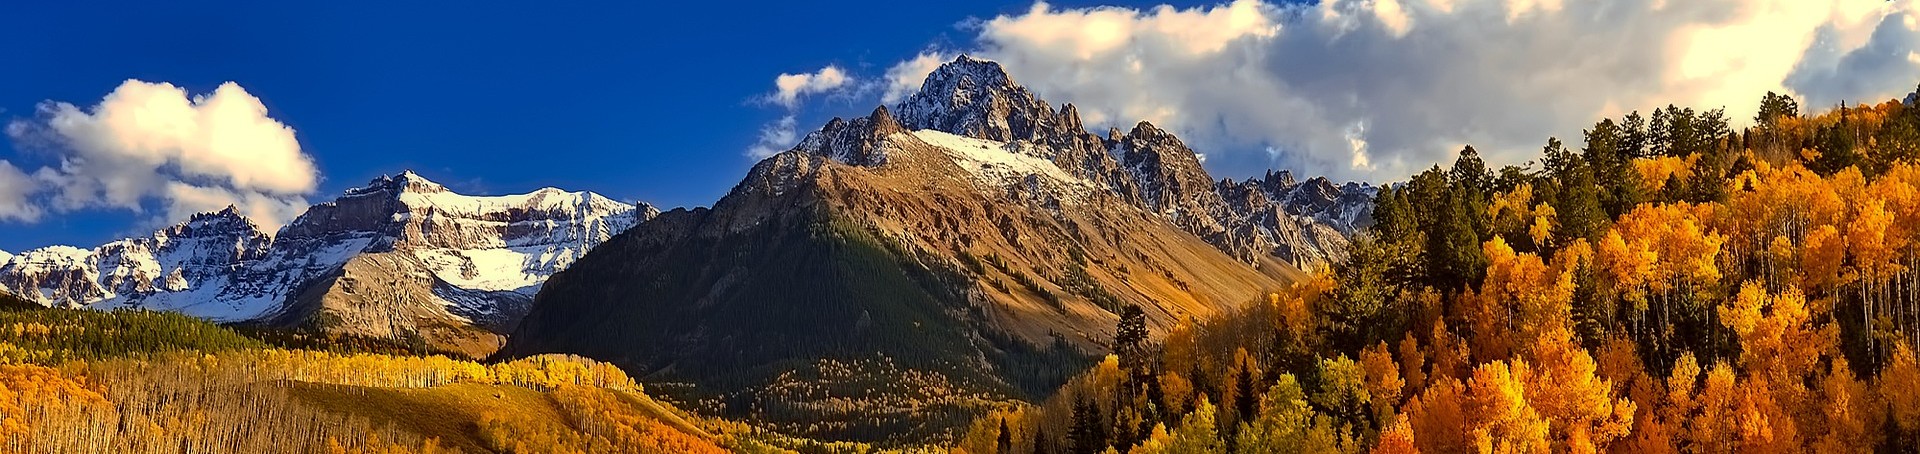 mountain in colorado